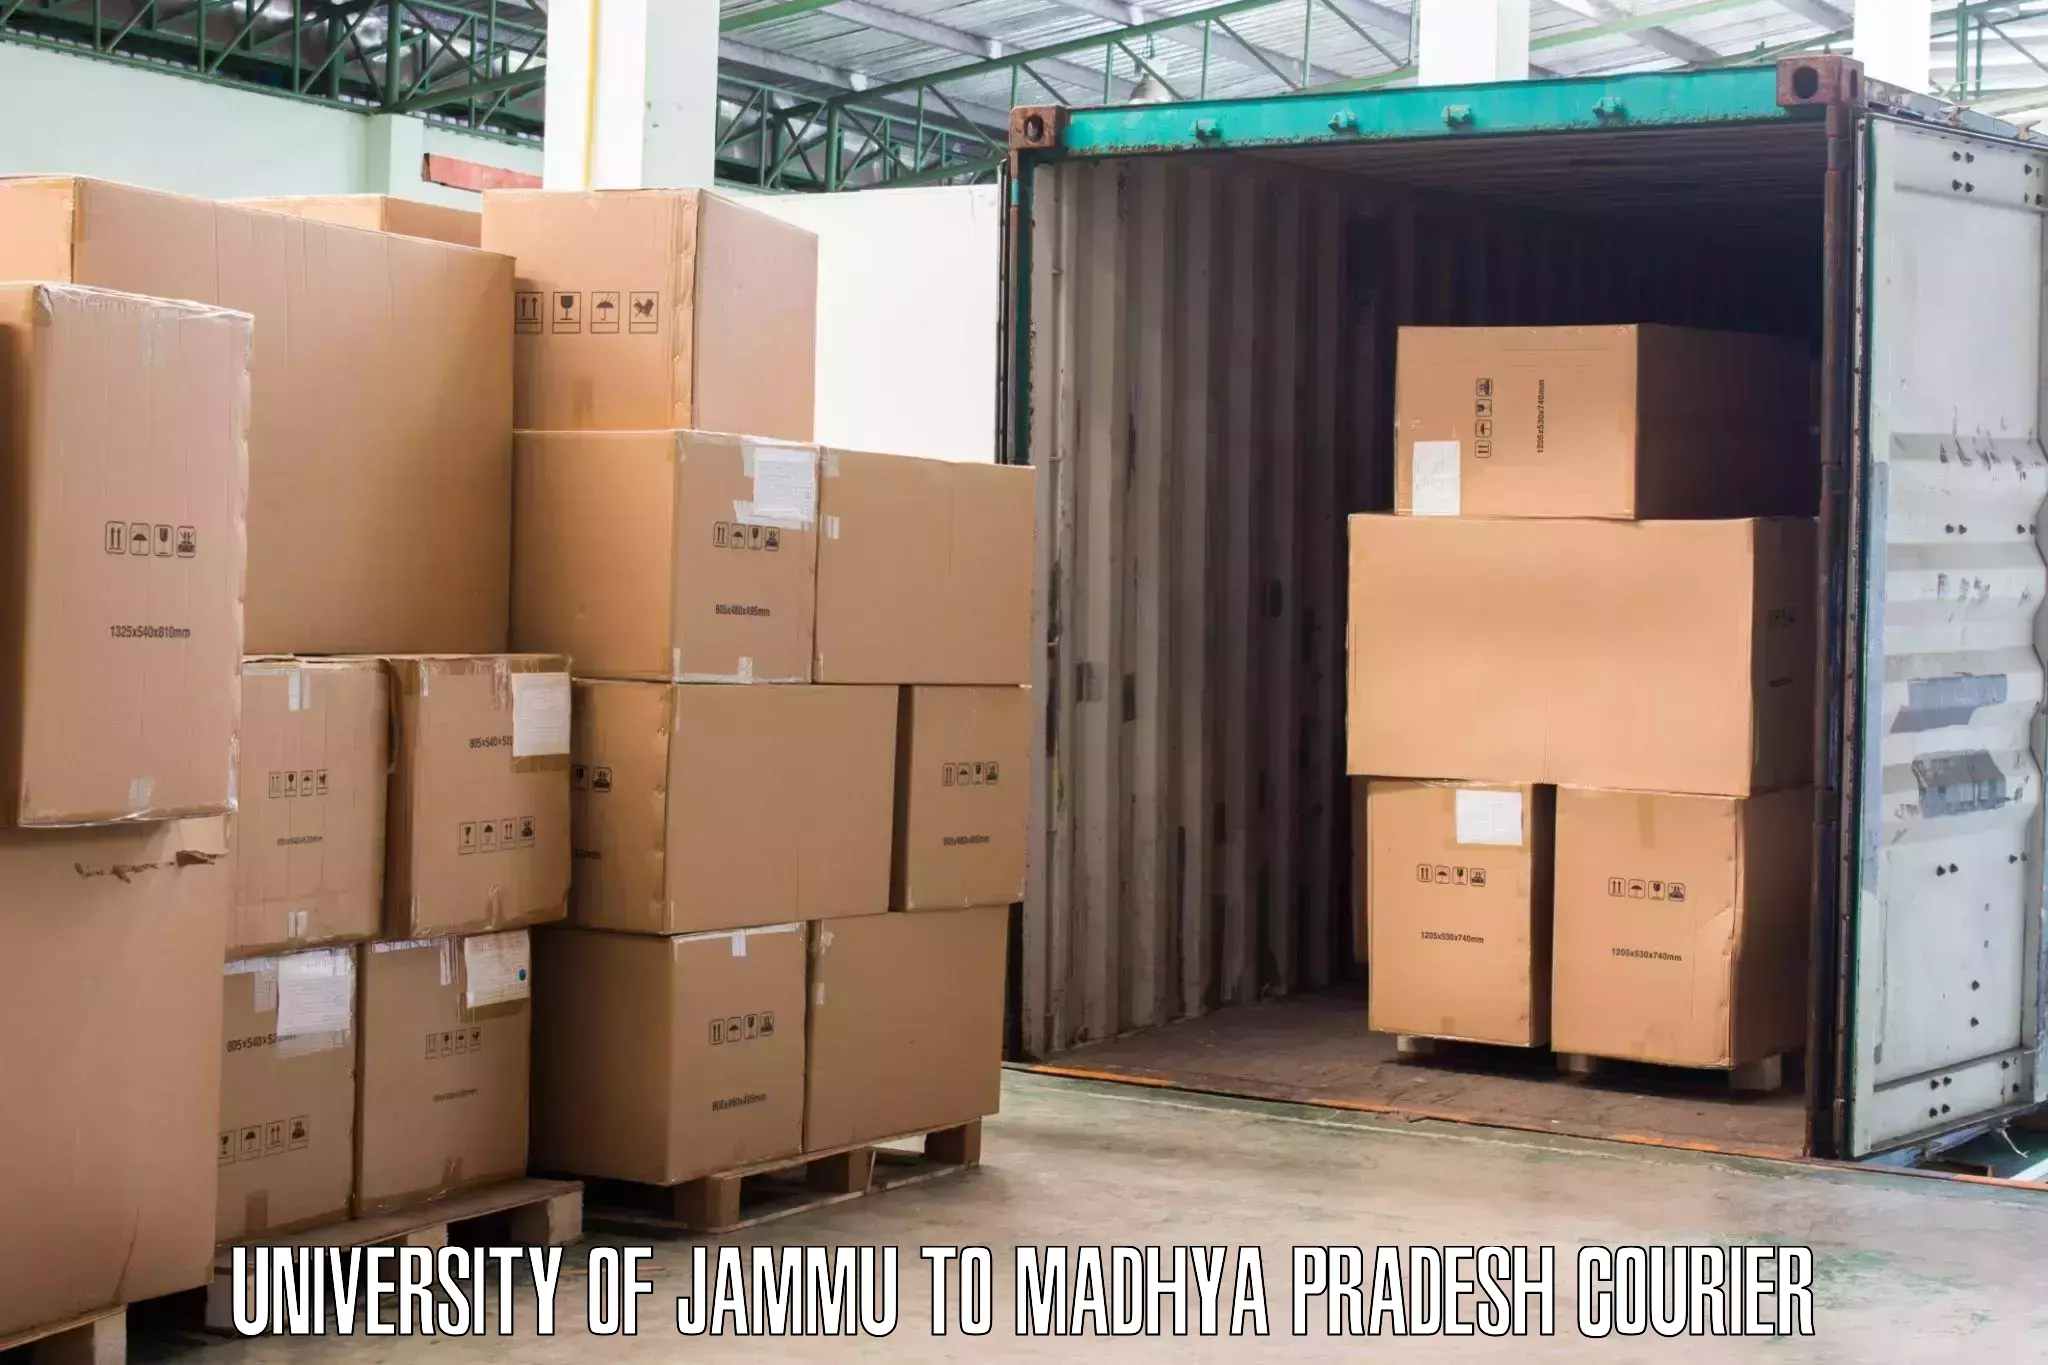 Furniture transport experts University of Jammu to Chhindwara